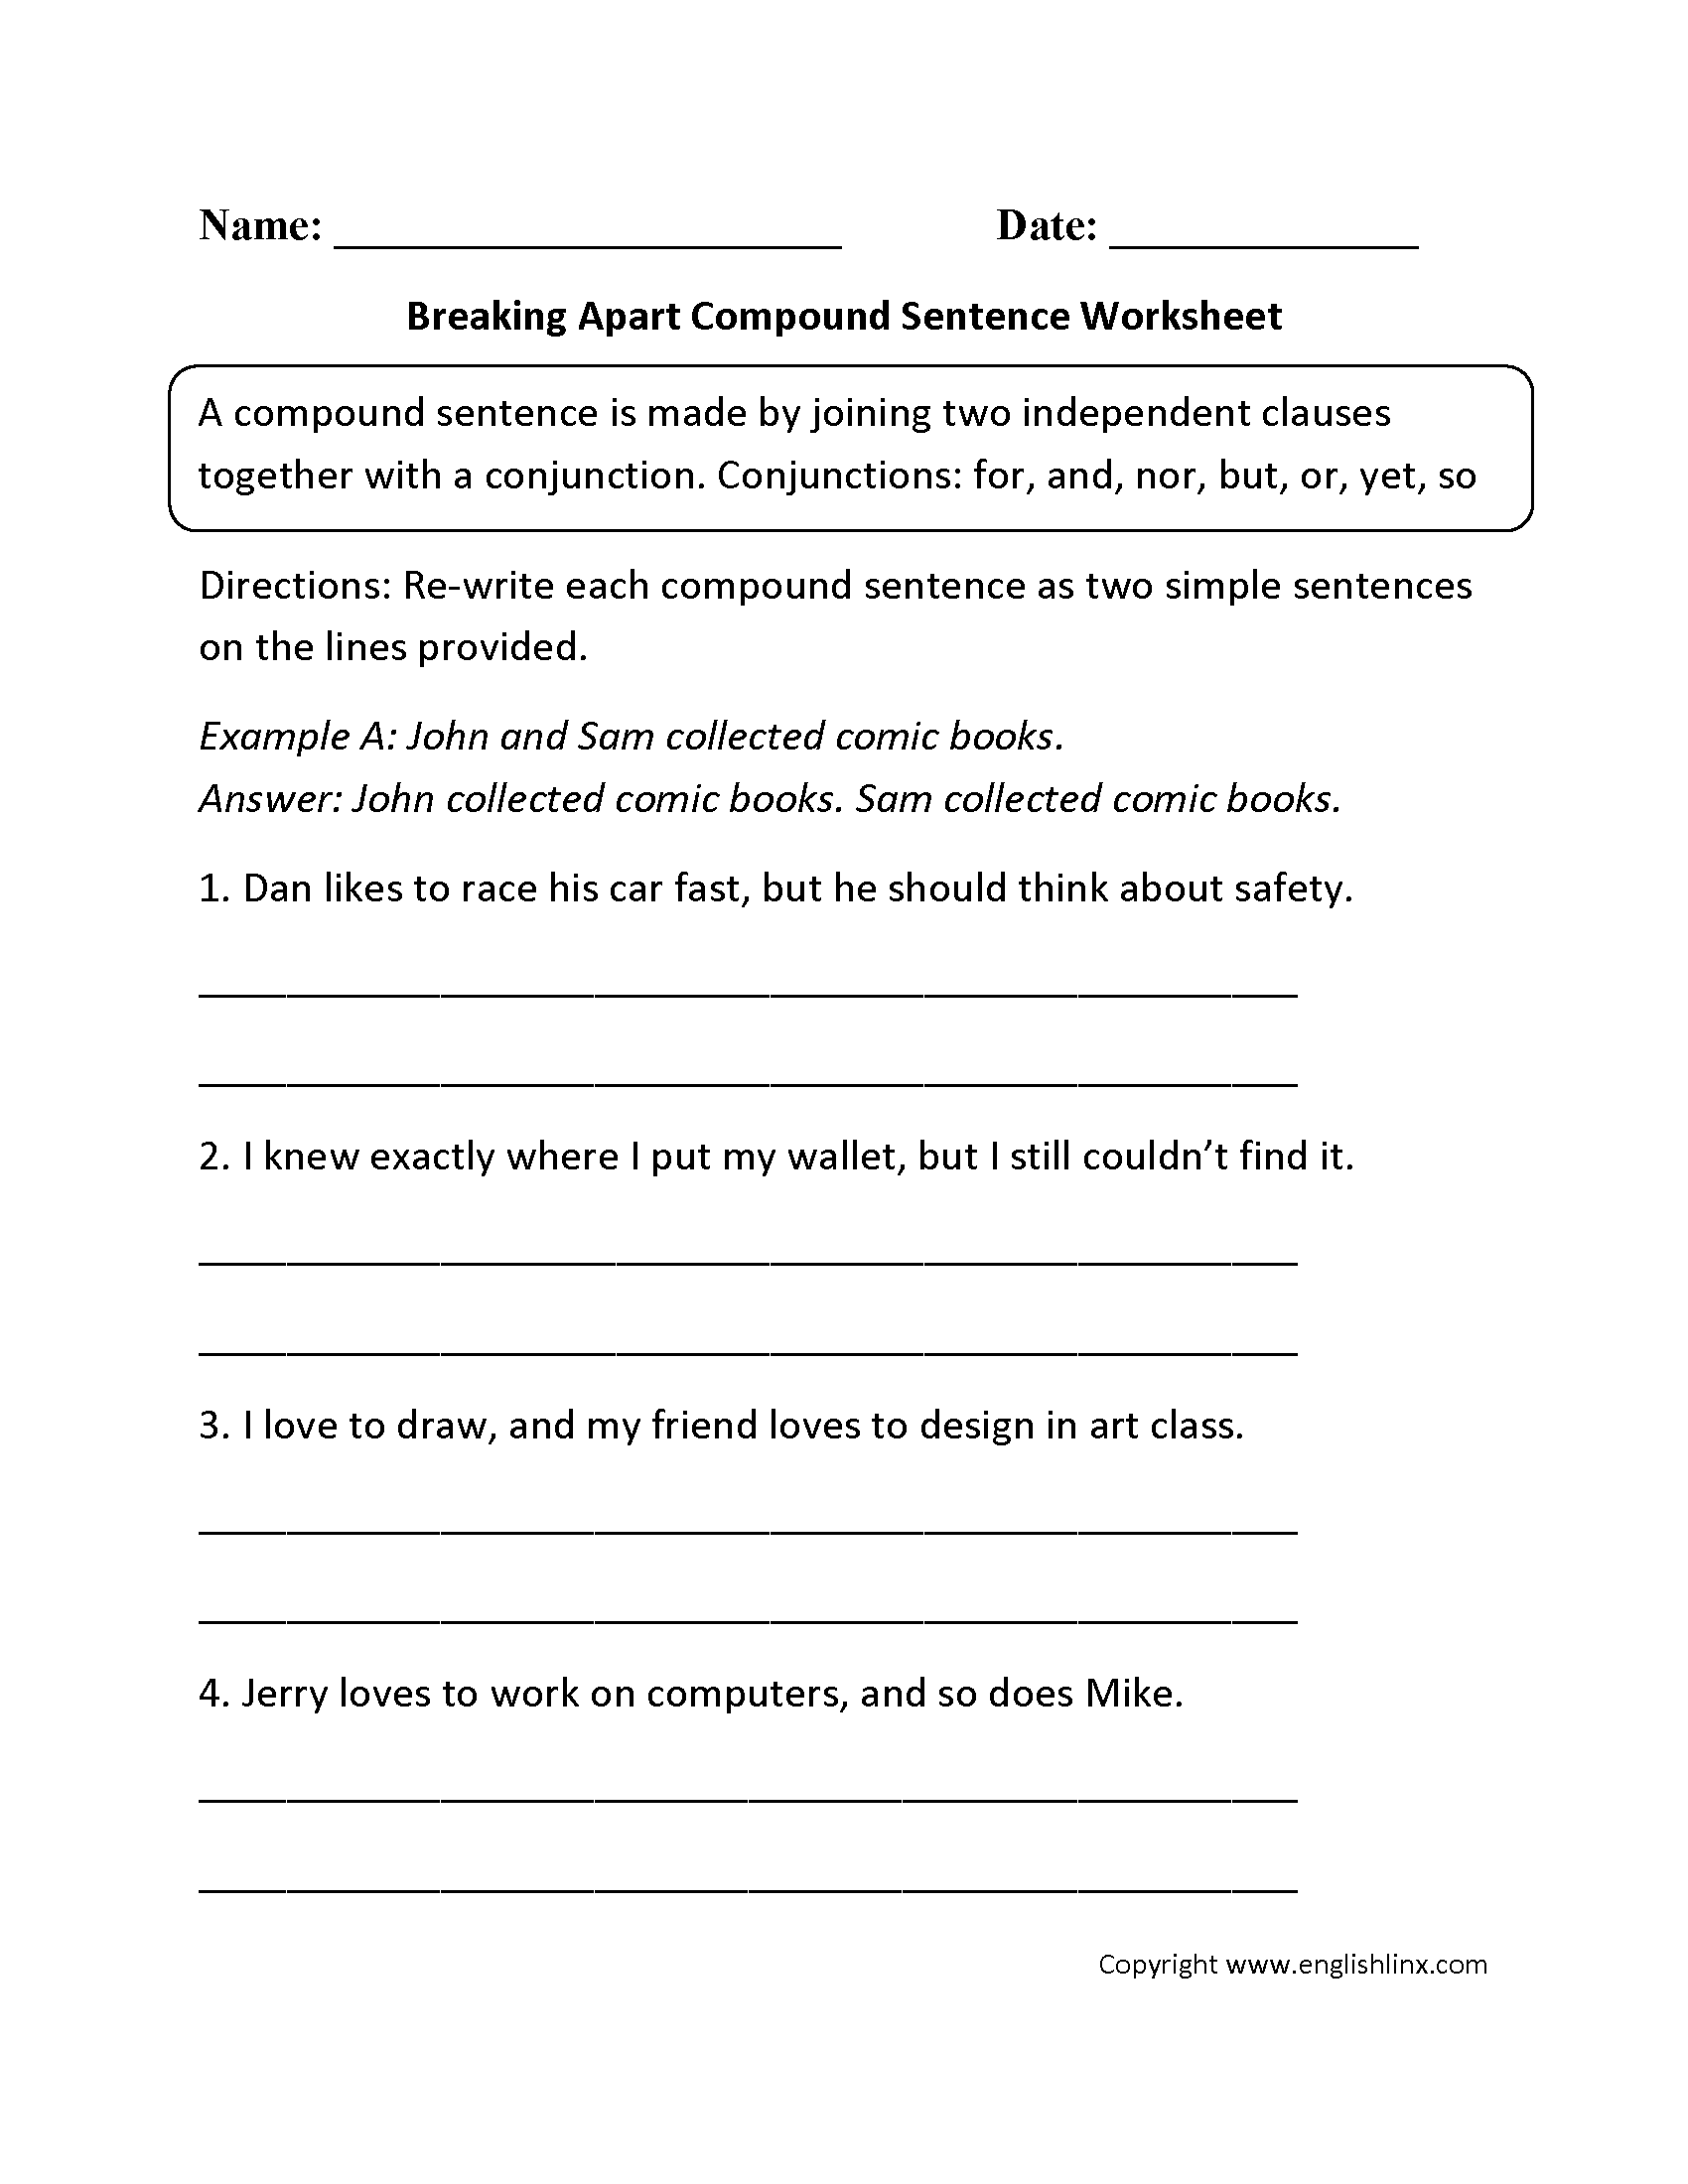 compound-complex-sentences-worksheet